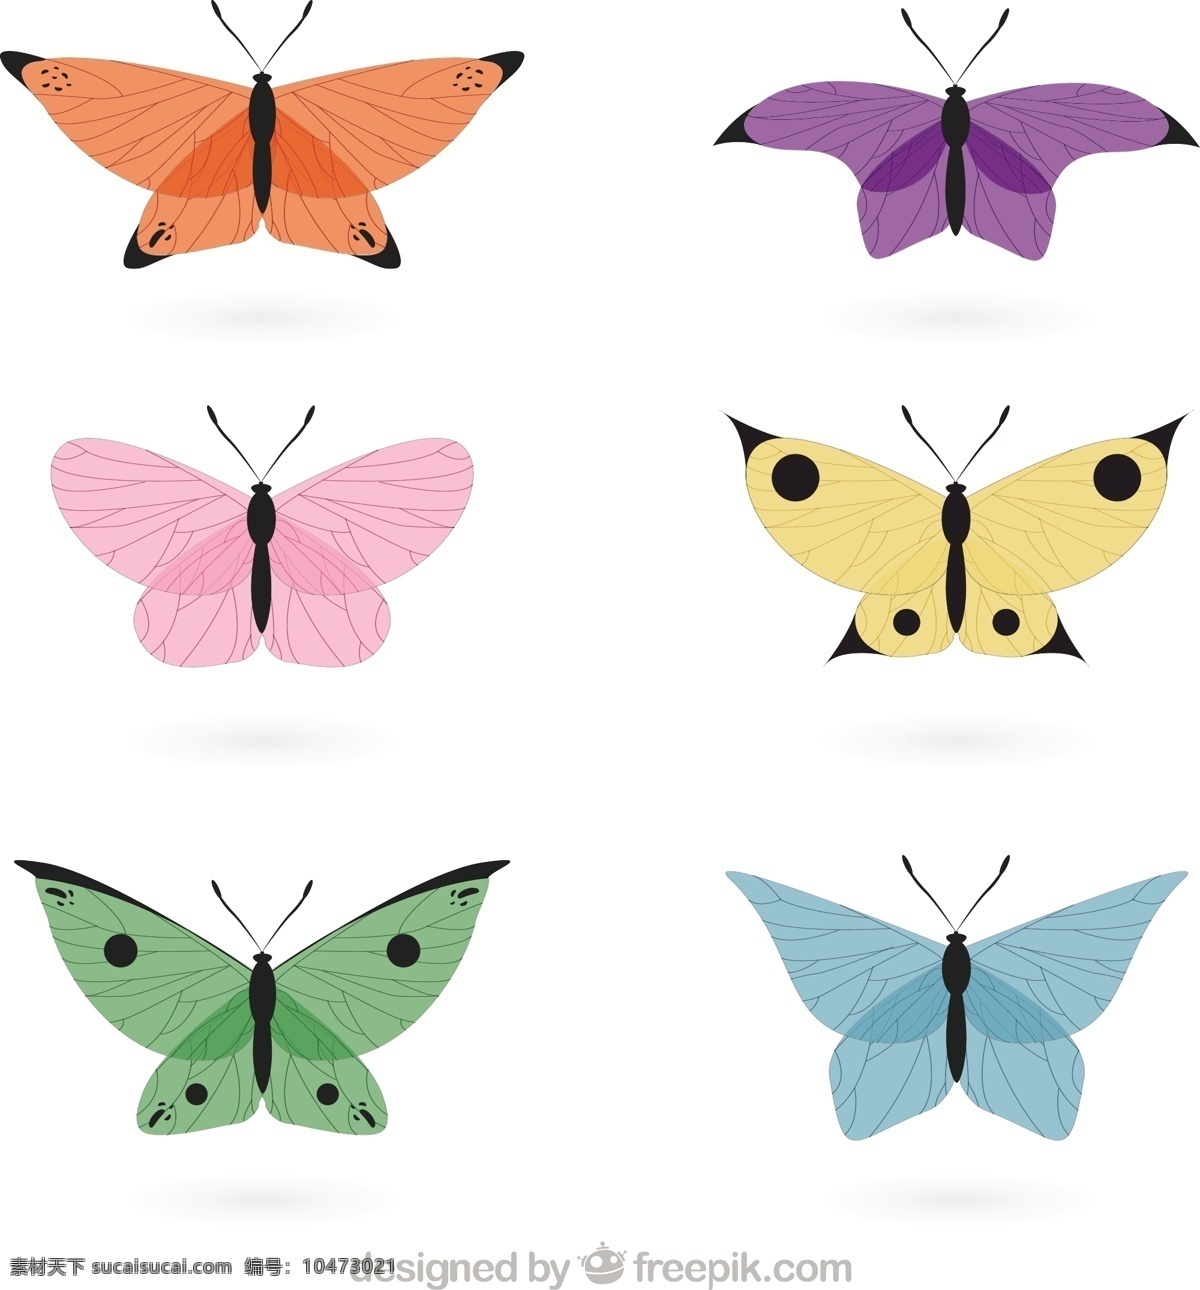 手绘 精巧 蝴蝶 颜色 一方面 自然 动物 可爱 色彩 绘画 飞 美丽 可爱的动物 昆虫 飞行 绘制草图 草图 白色